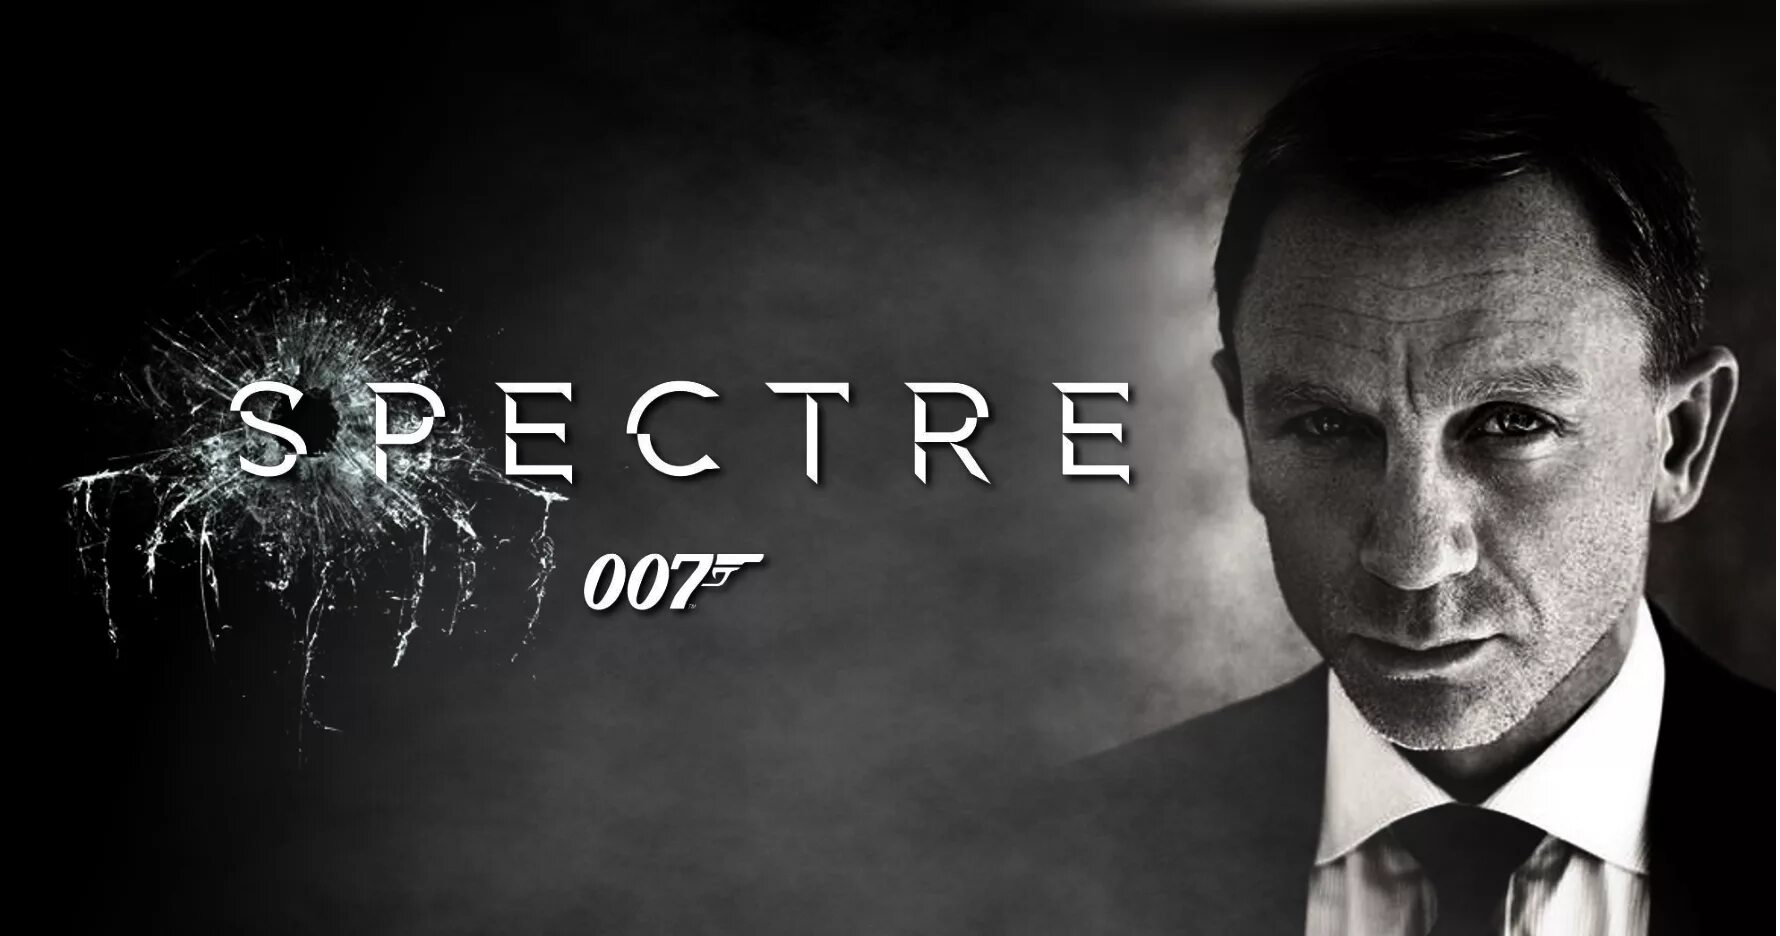 James Bond 007 Spectre. Spectre s